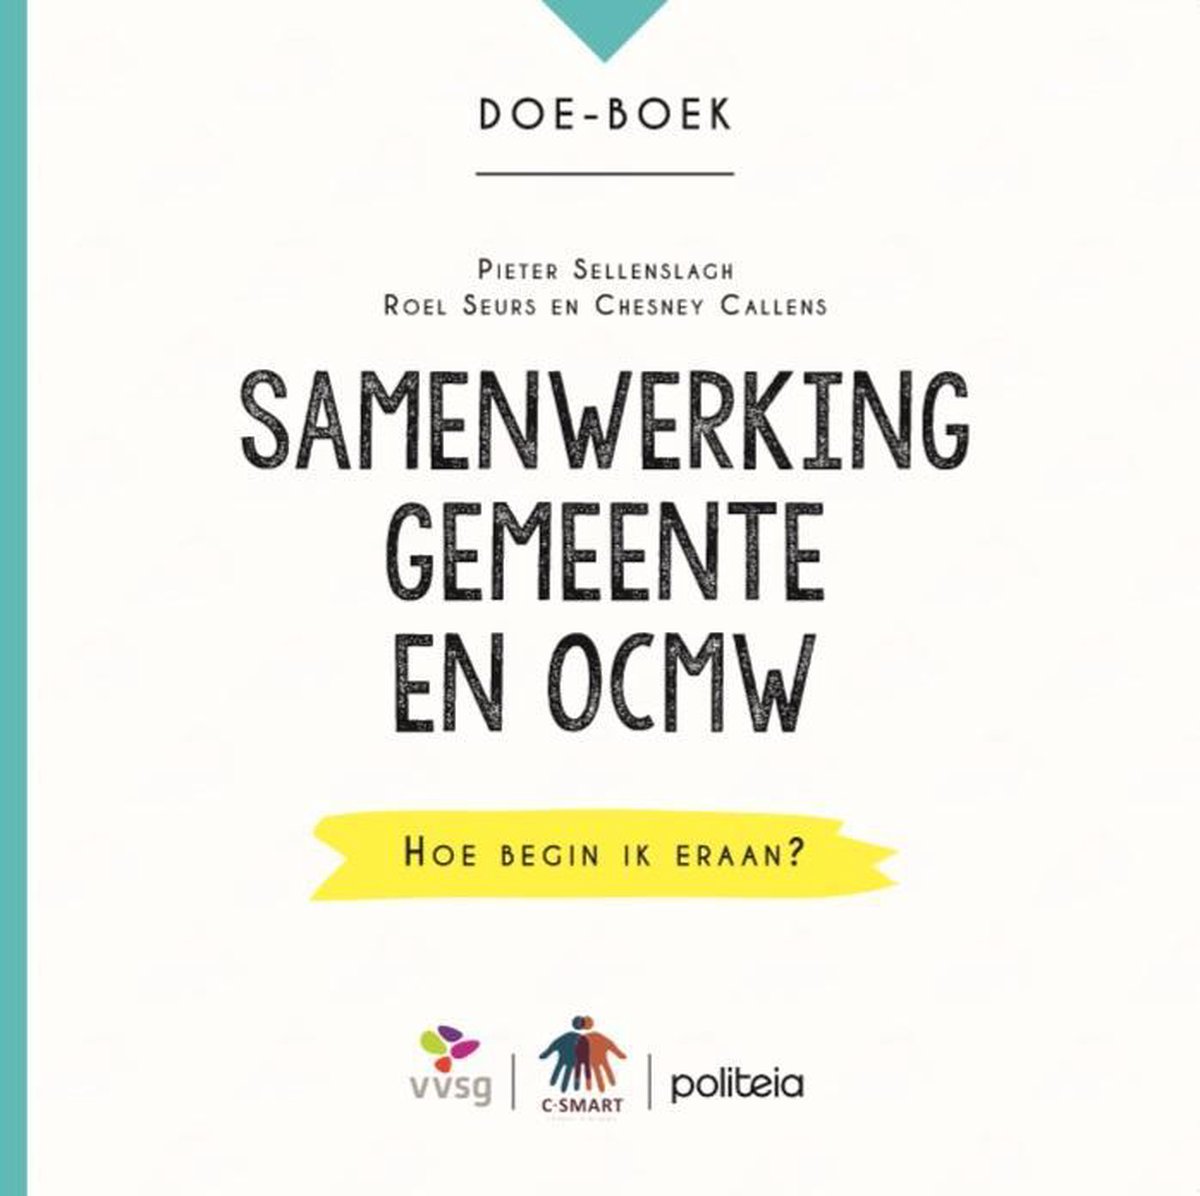 Doe-boek Samenwerking gemeente en OCMW